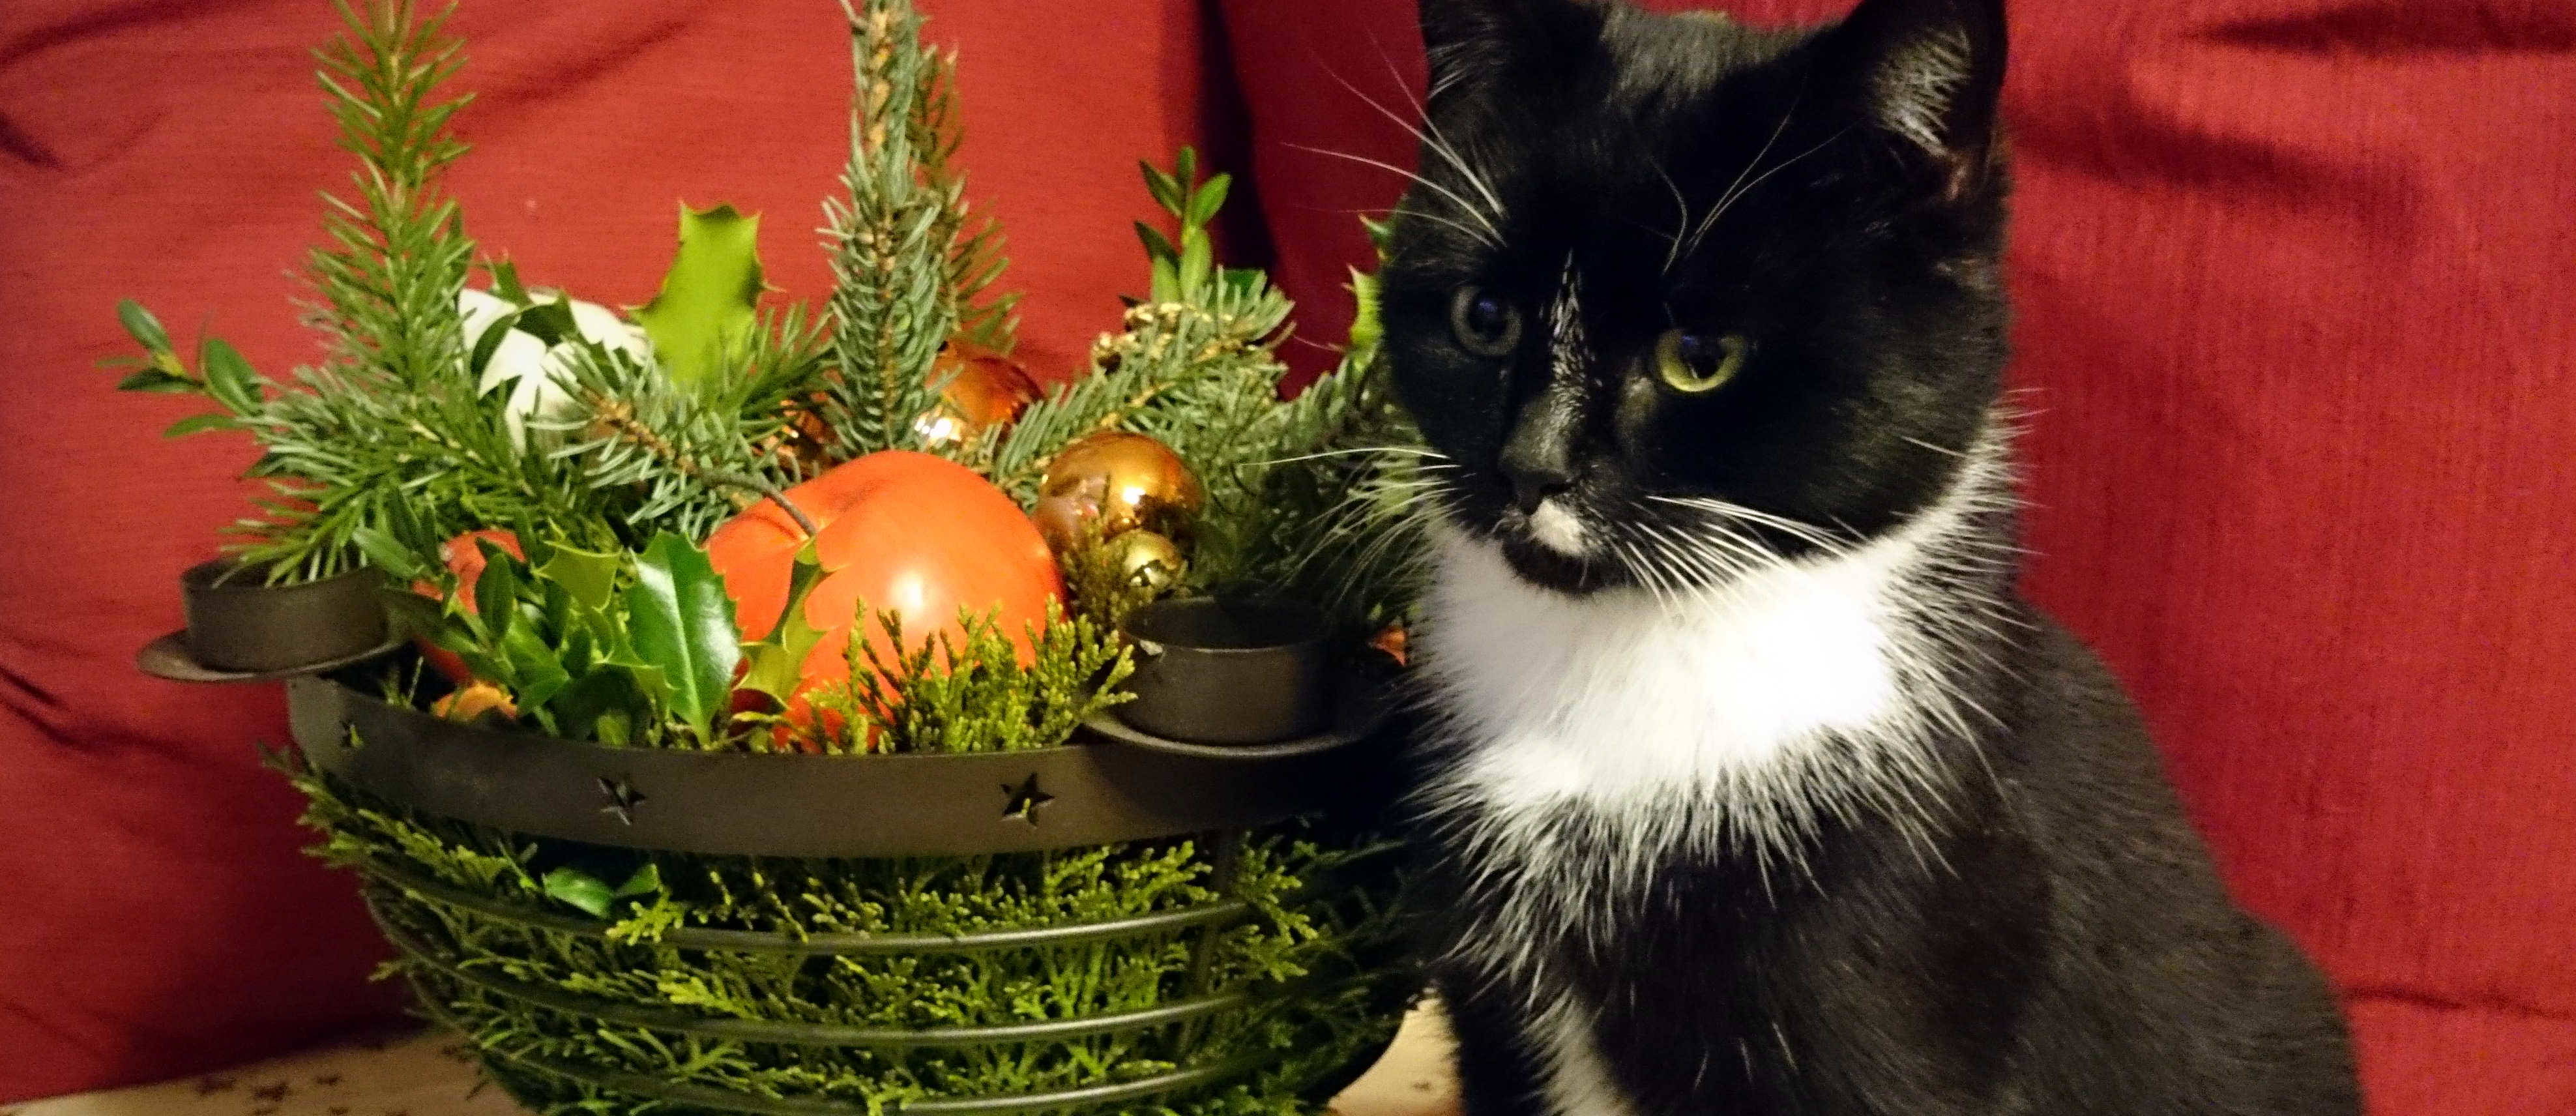 Katze neben Weihnachtsgesteck